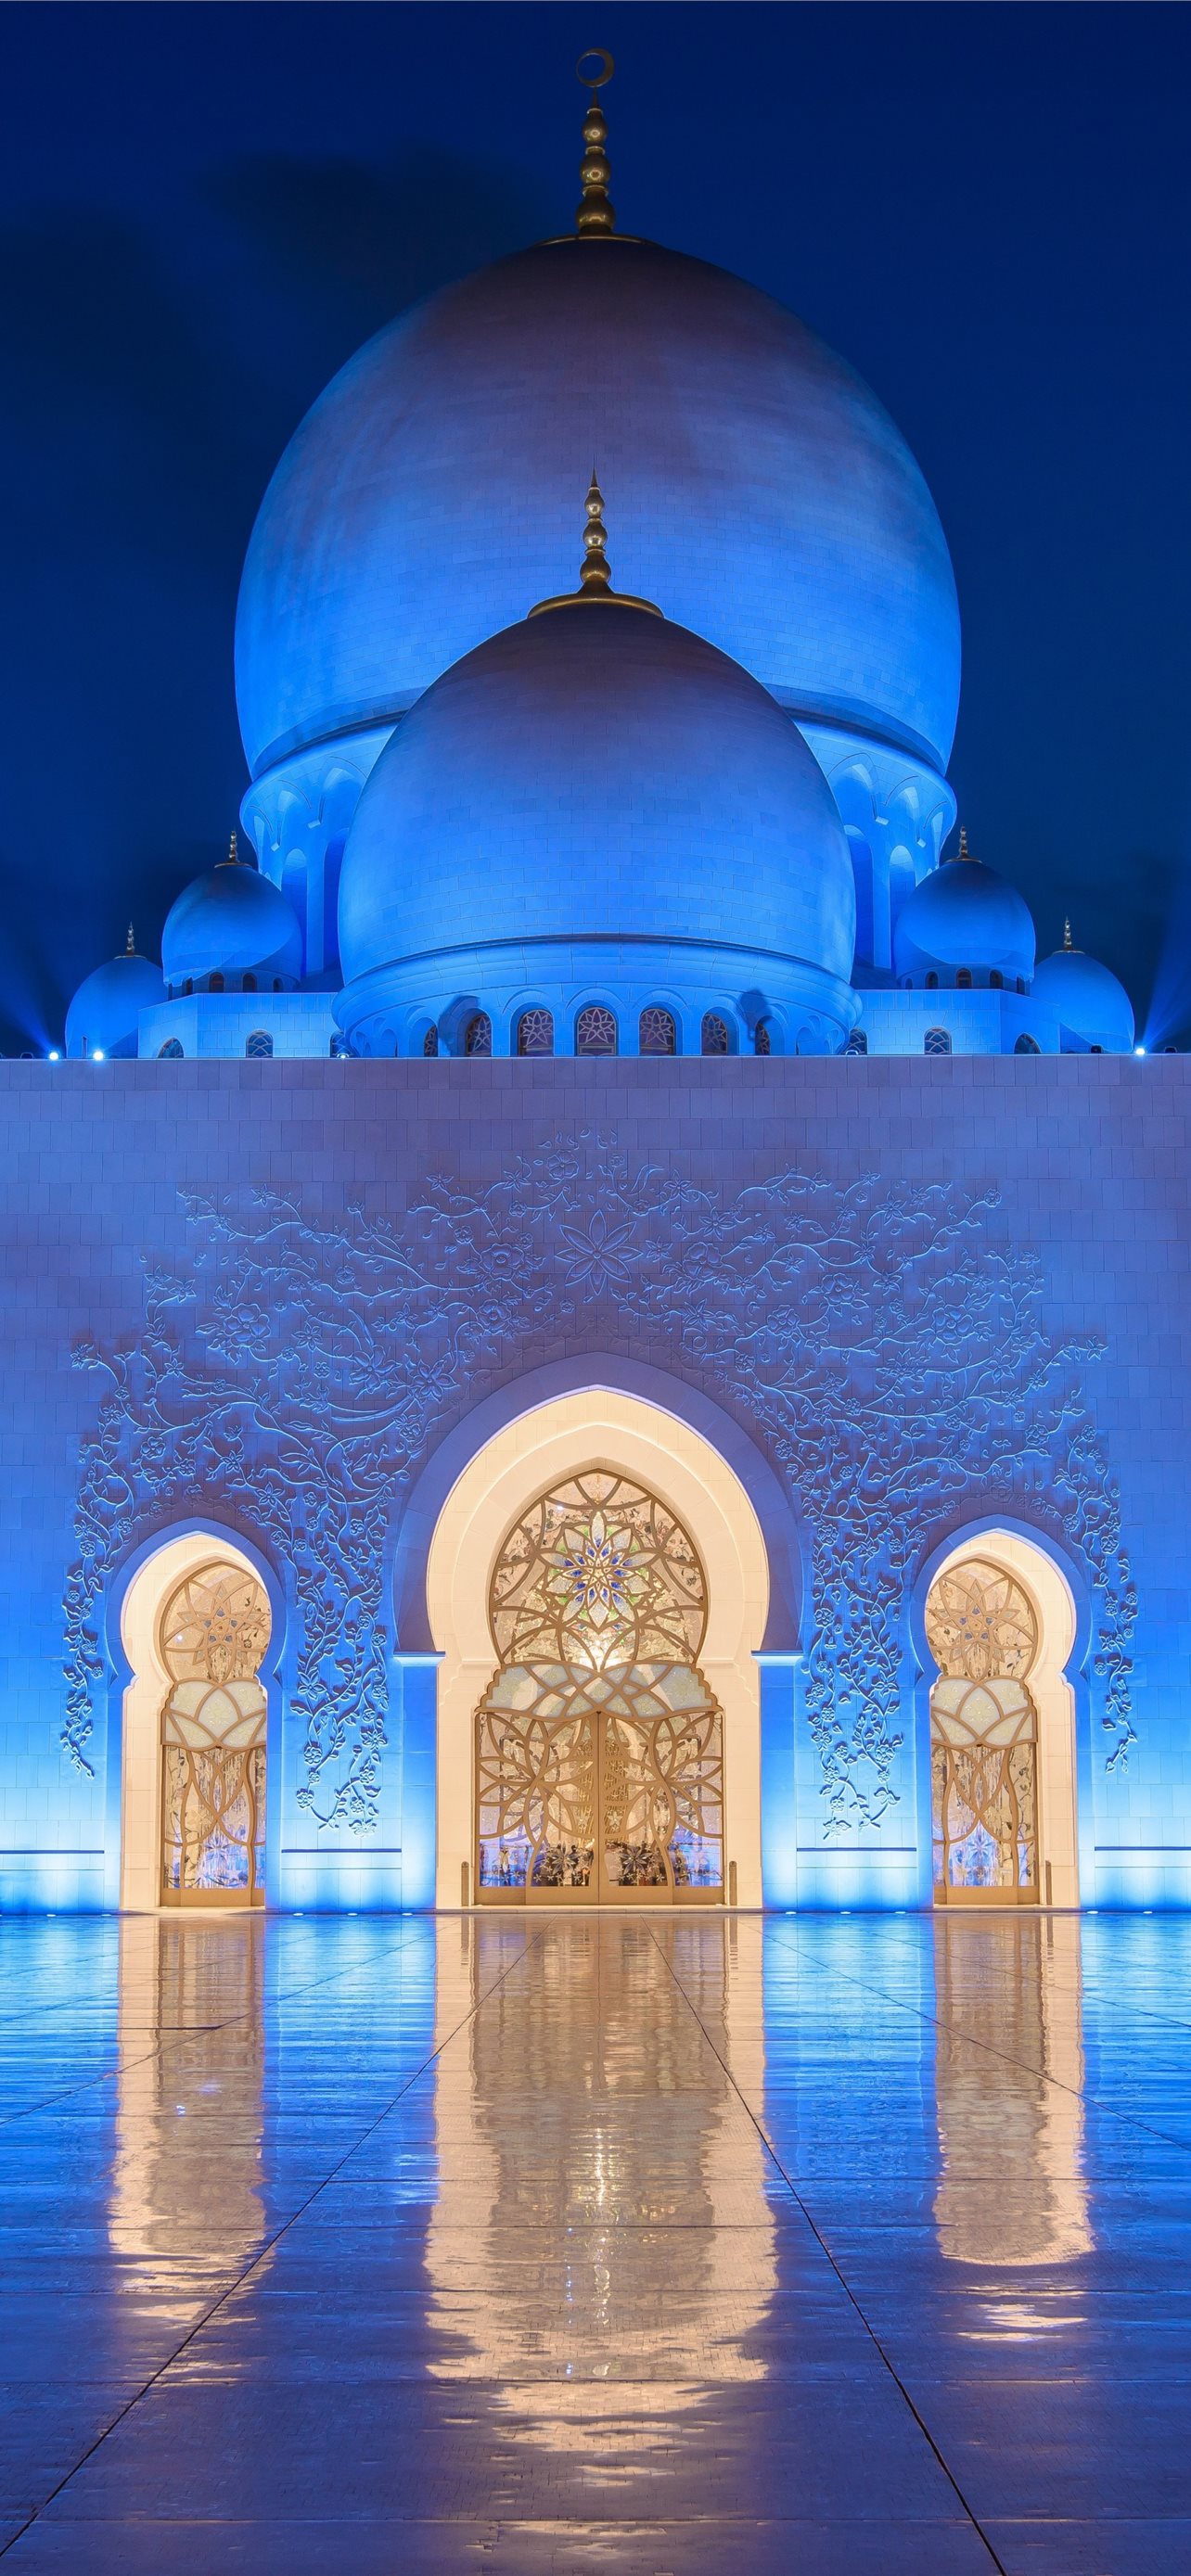 Hình nền  2560x1440 px Abu Dhabi Kiến trúc Kiến trúc Hồi giáo đá hoa  Nhà thờ Hồi giáo Ánh sáng mặt trời 2560x1440  4kWallpaper  1311285  Hình  nền đẹp hd  WallHere